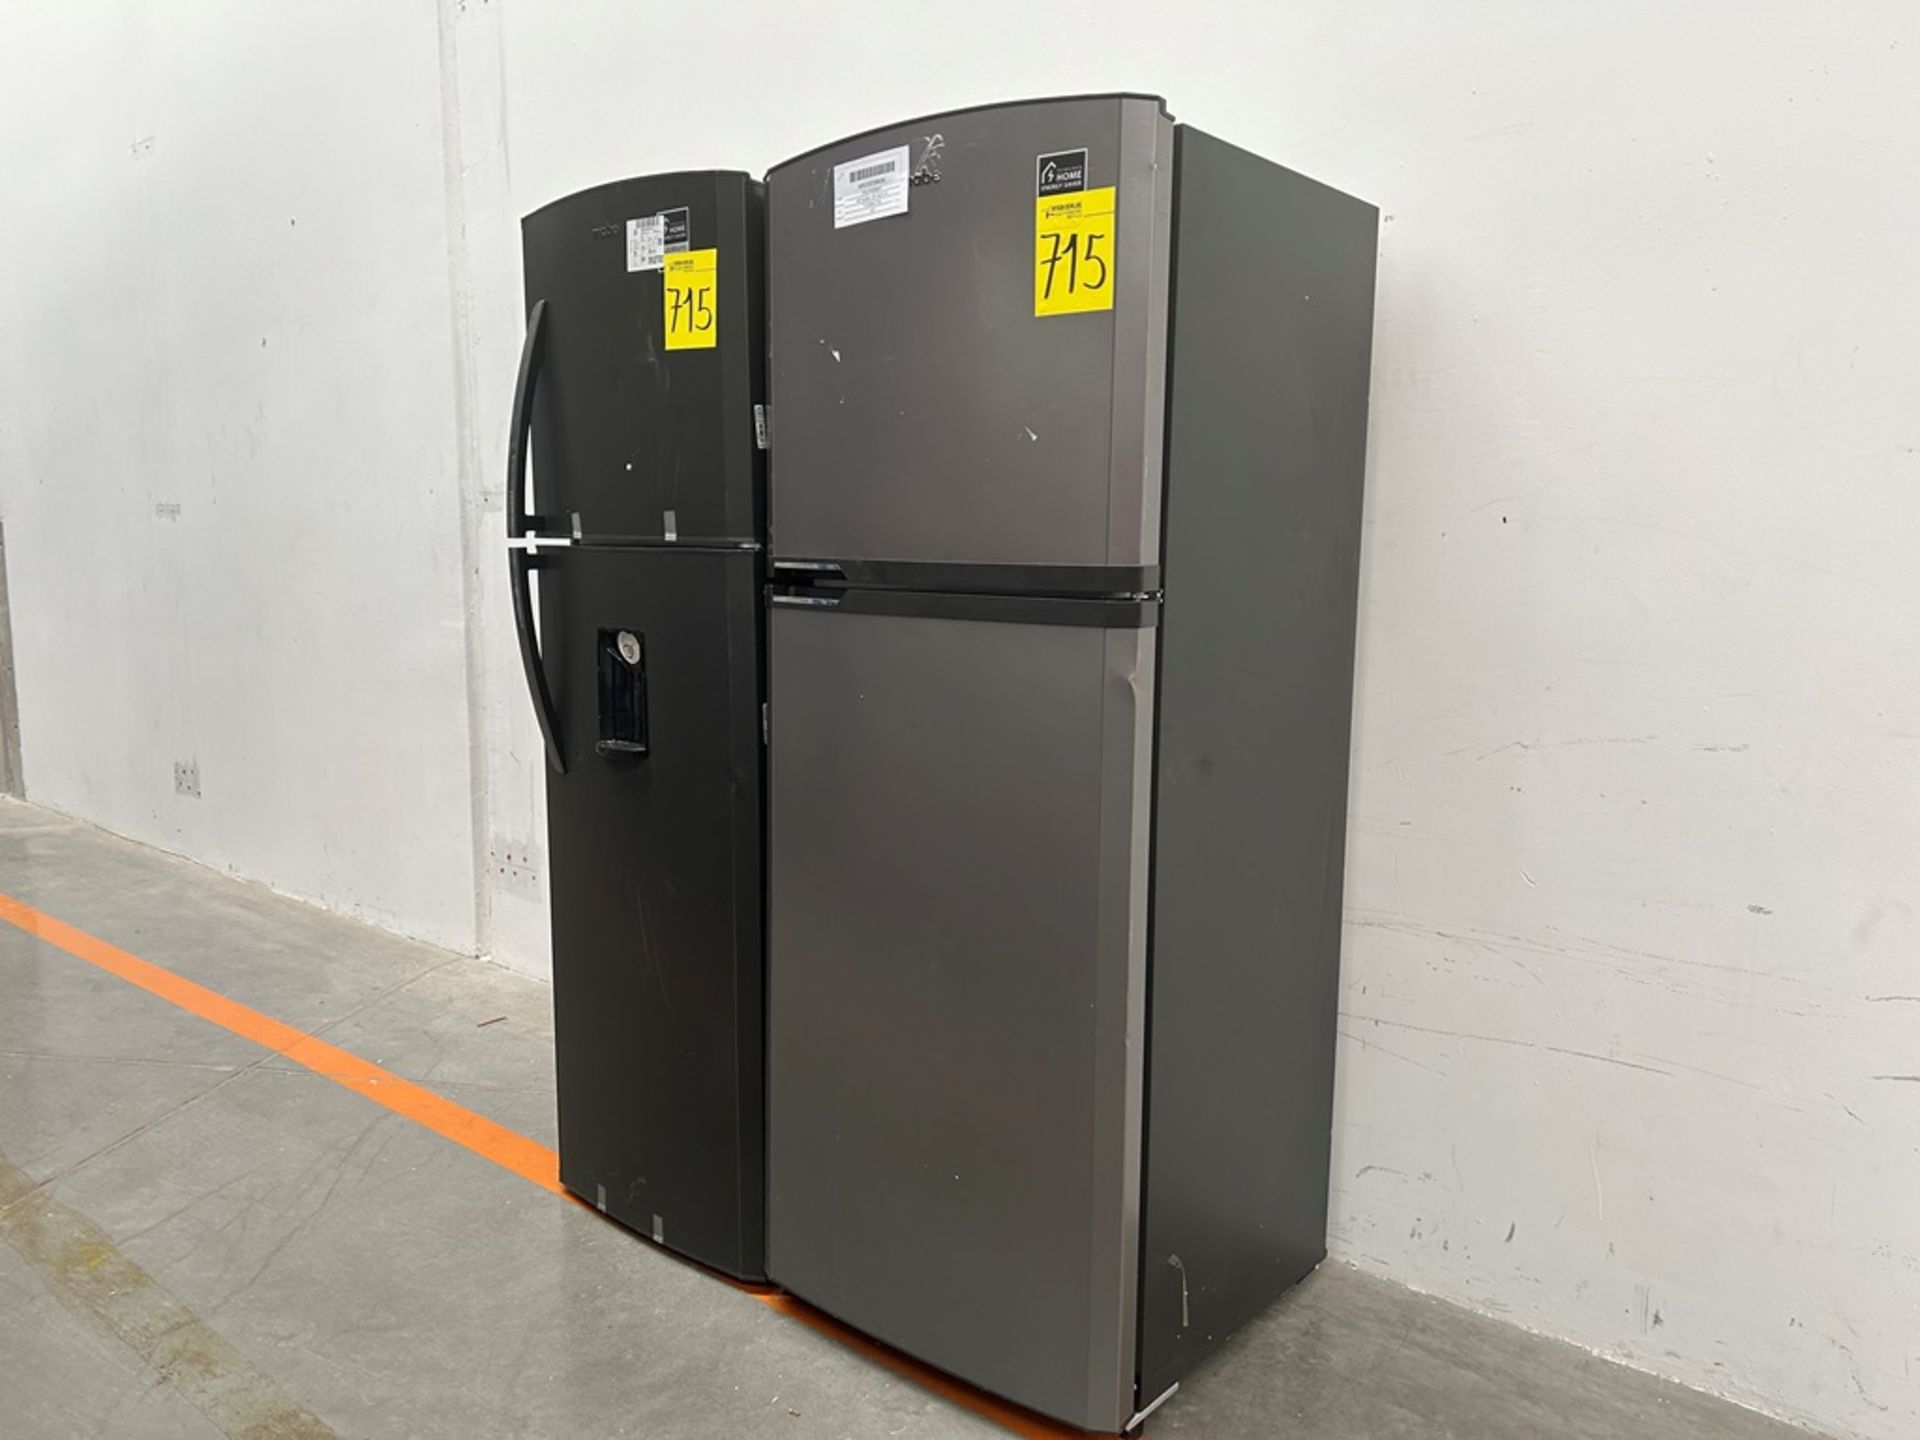 Lote de 2 refrigeradores contiene: 1 refrigerador Marca MABE, Modelo RME360FVMRMA, Serie 816455, Co - Image 2 of 18